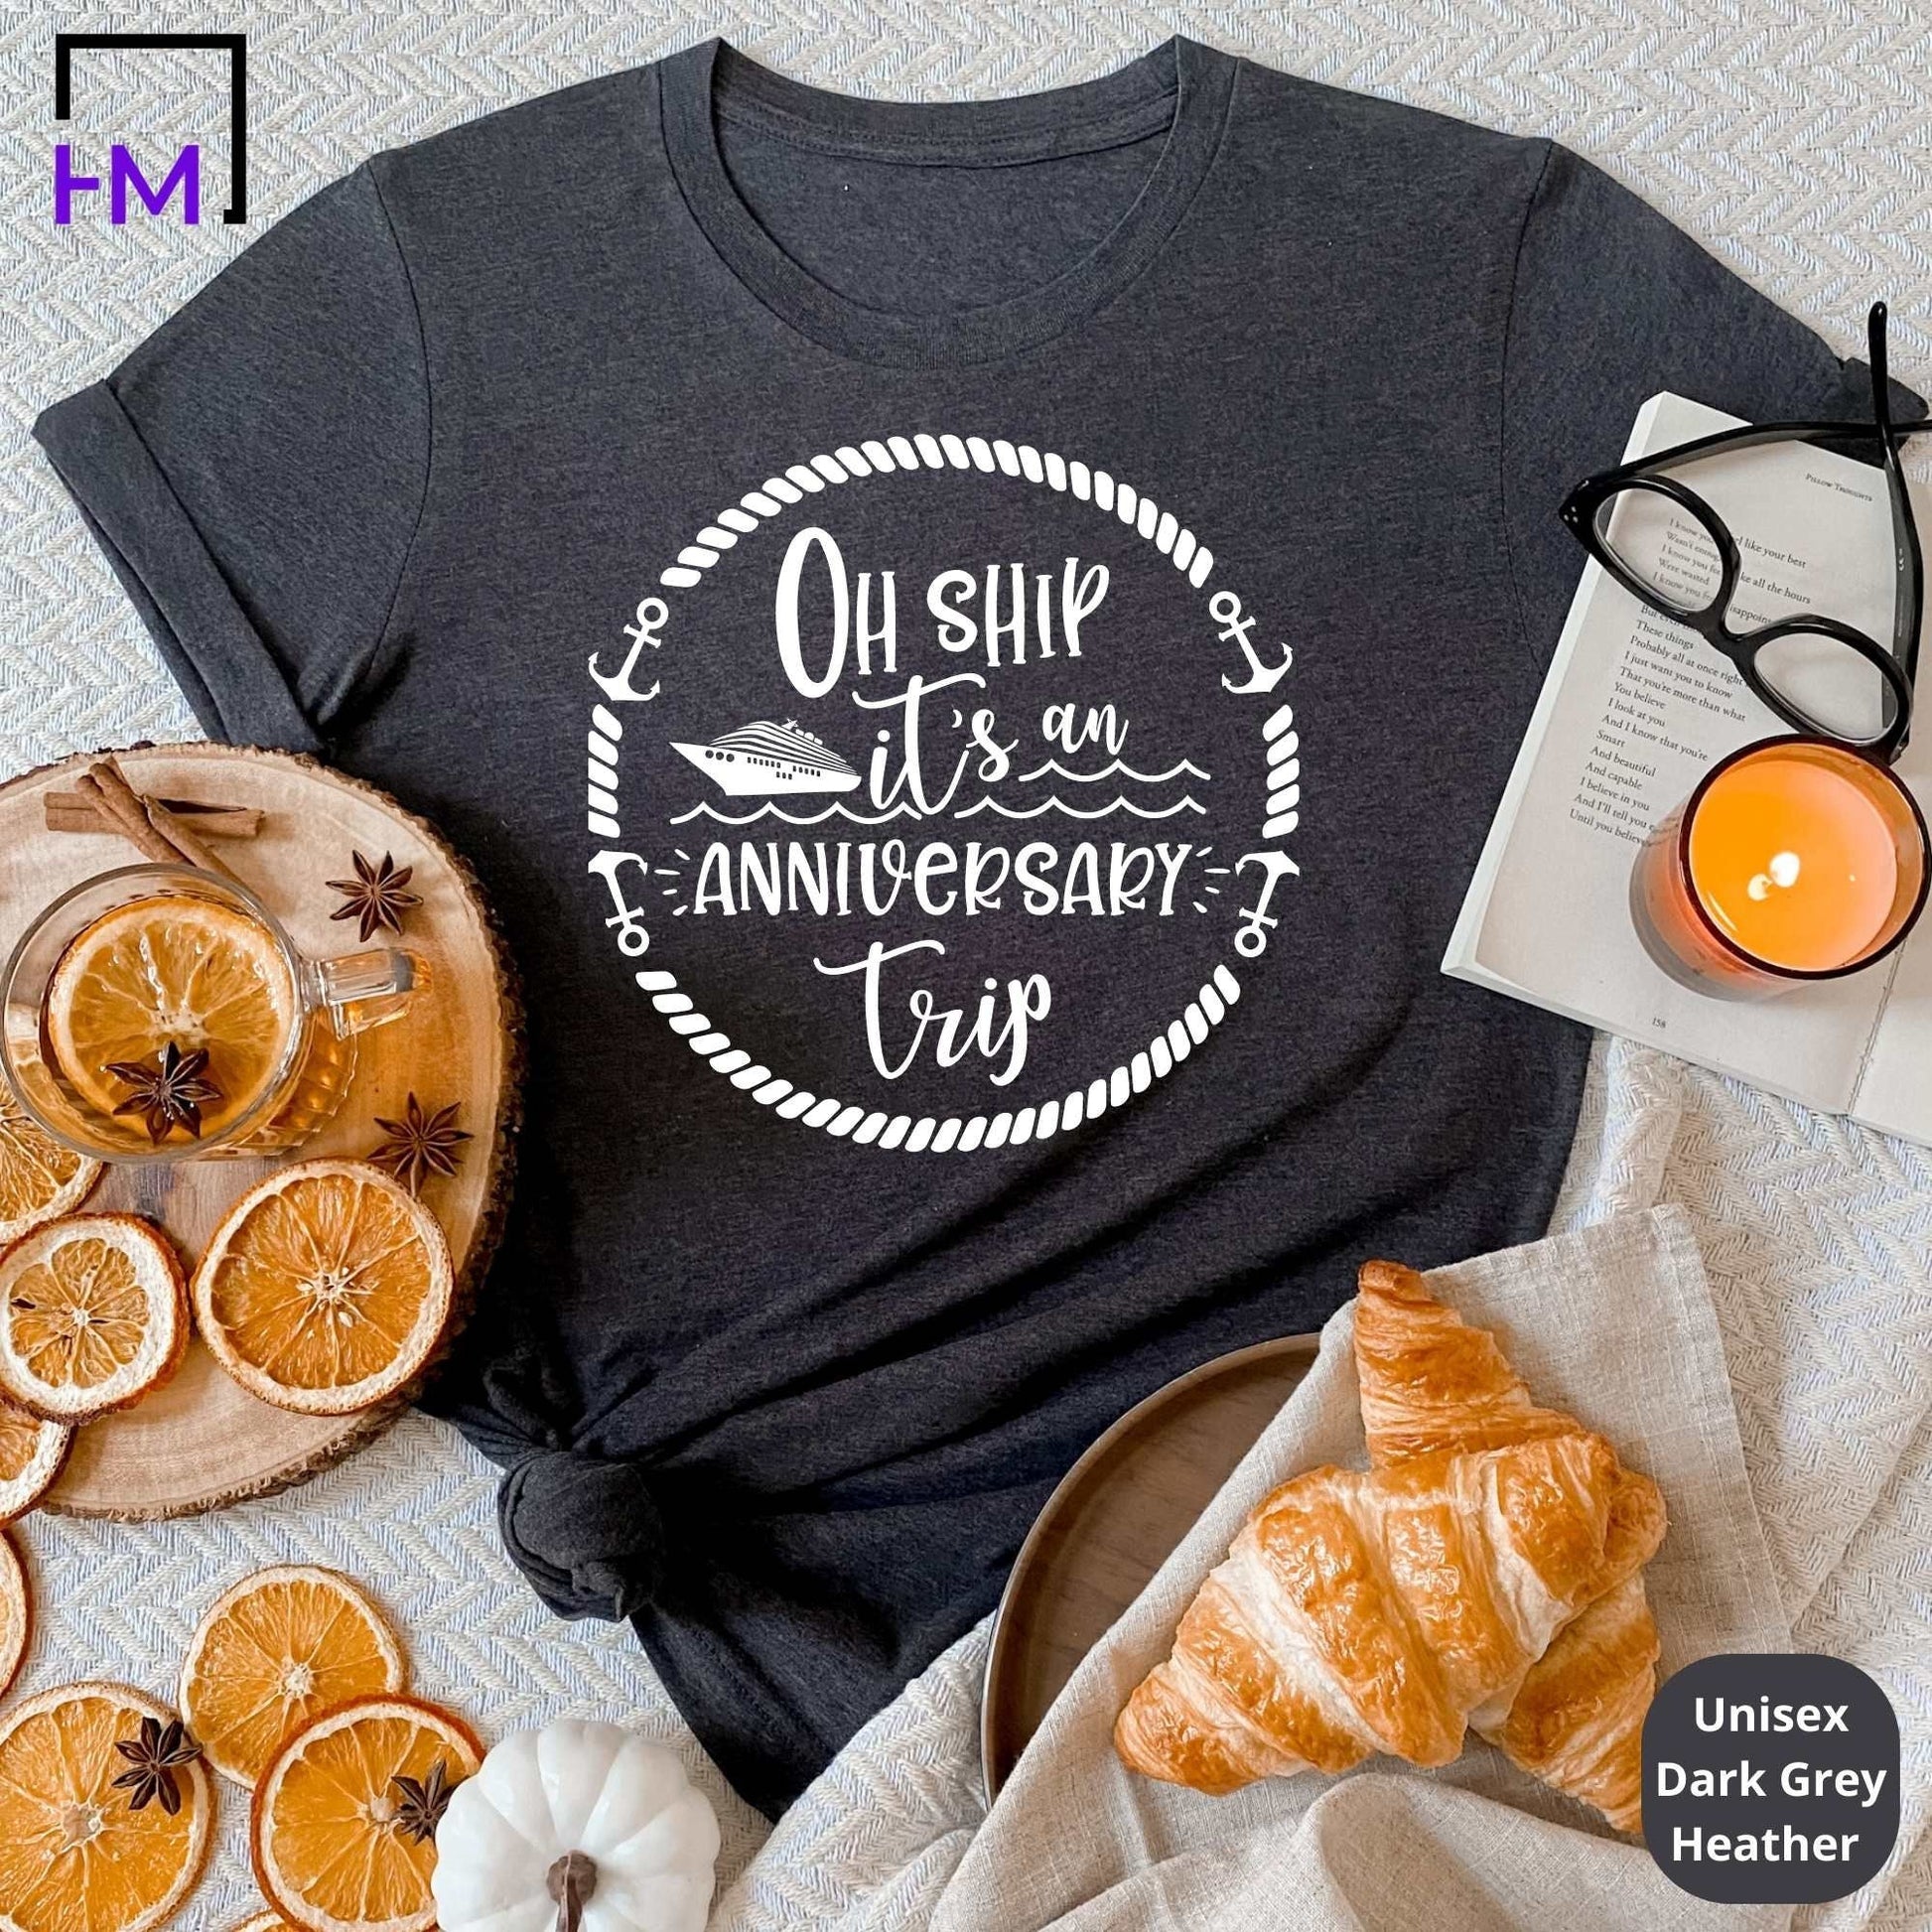 Anniversary Cruise T-Shirts HMDesignStudioUS